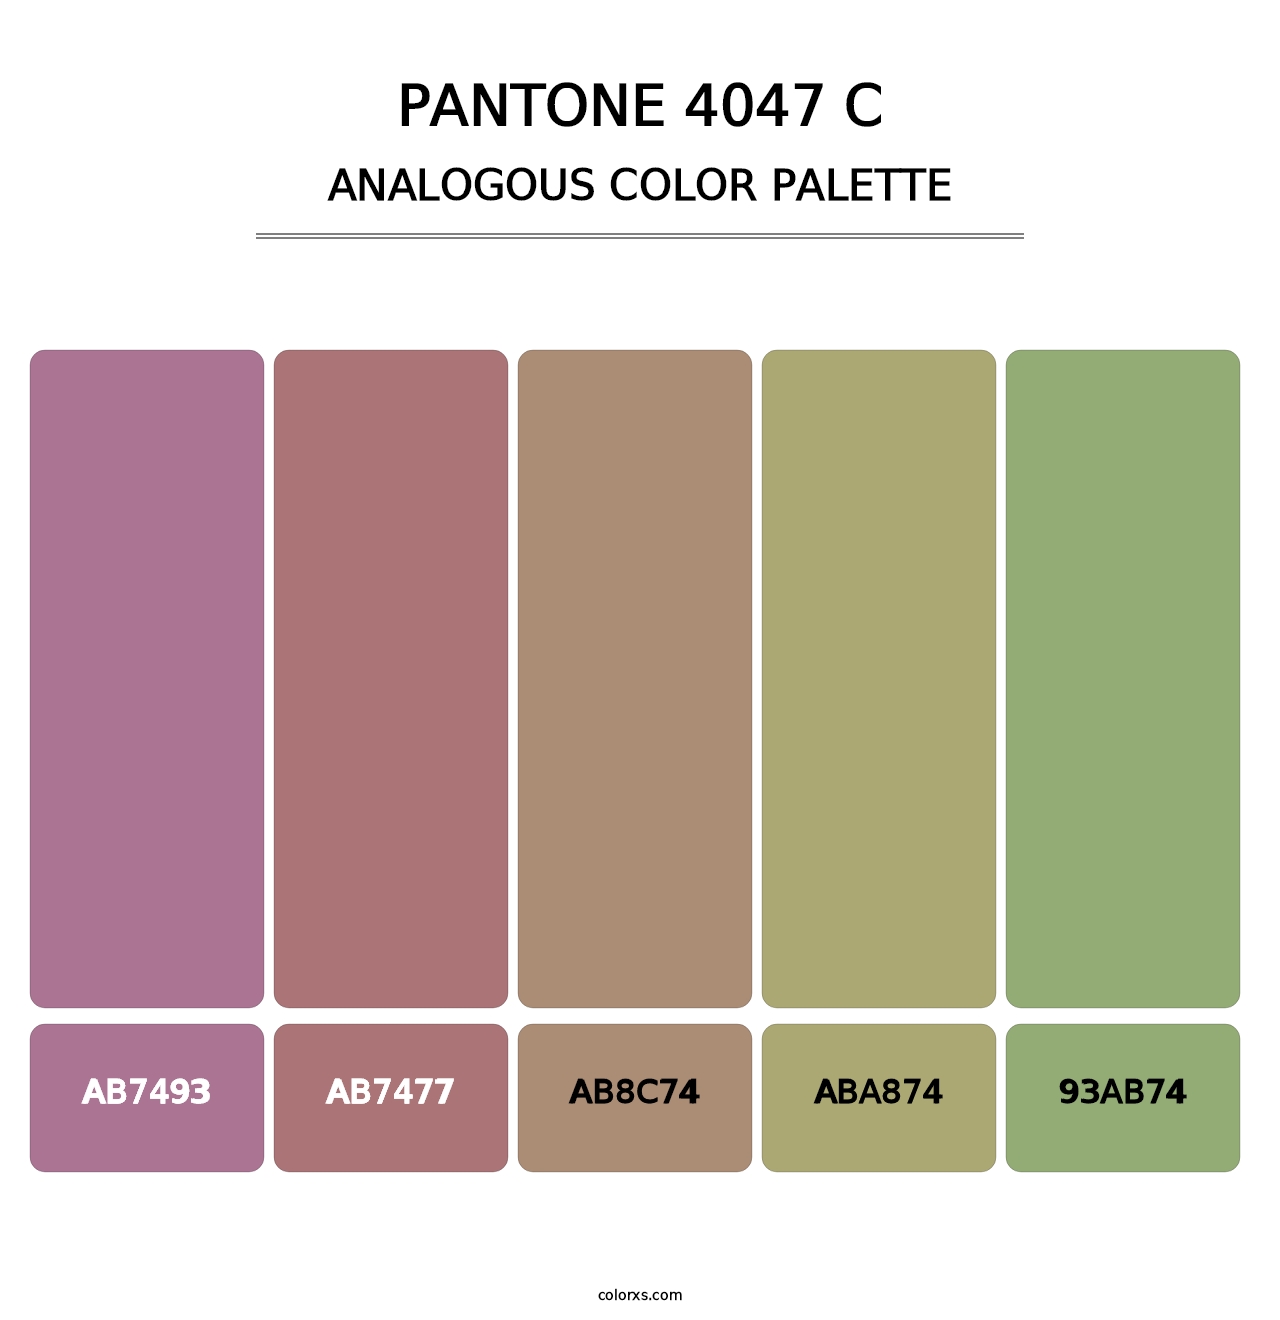 PANTONE 4047 C - Analogous Color Palette